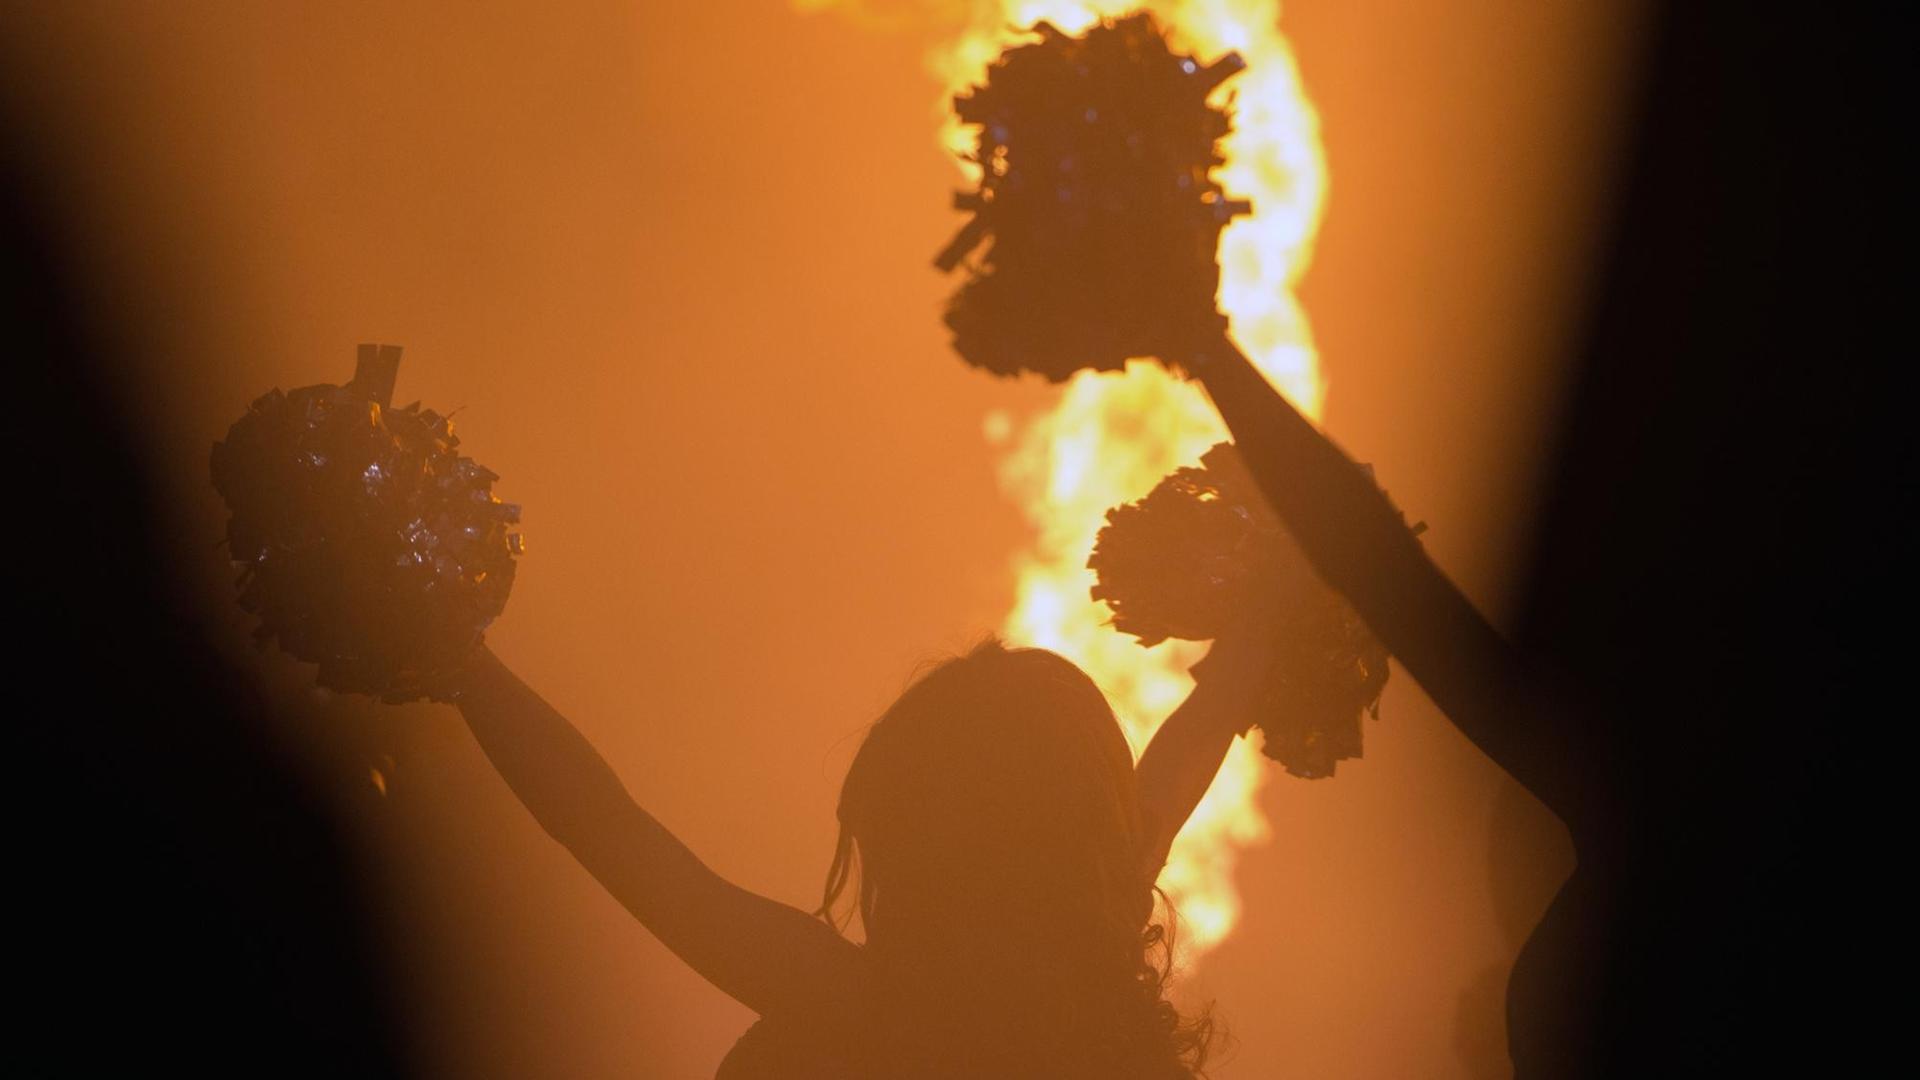 Eine Cheerleaderin steht mit ausgestreckten Armen und Pompons an den Händen im Gegenlicht. Im Hintergrund ist eine Feuerfontäne zu sehen.